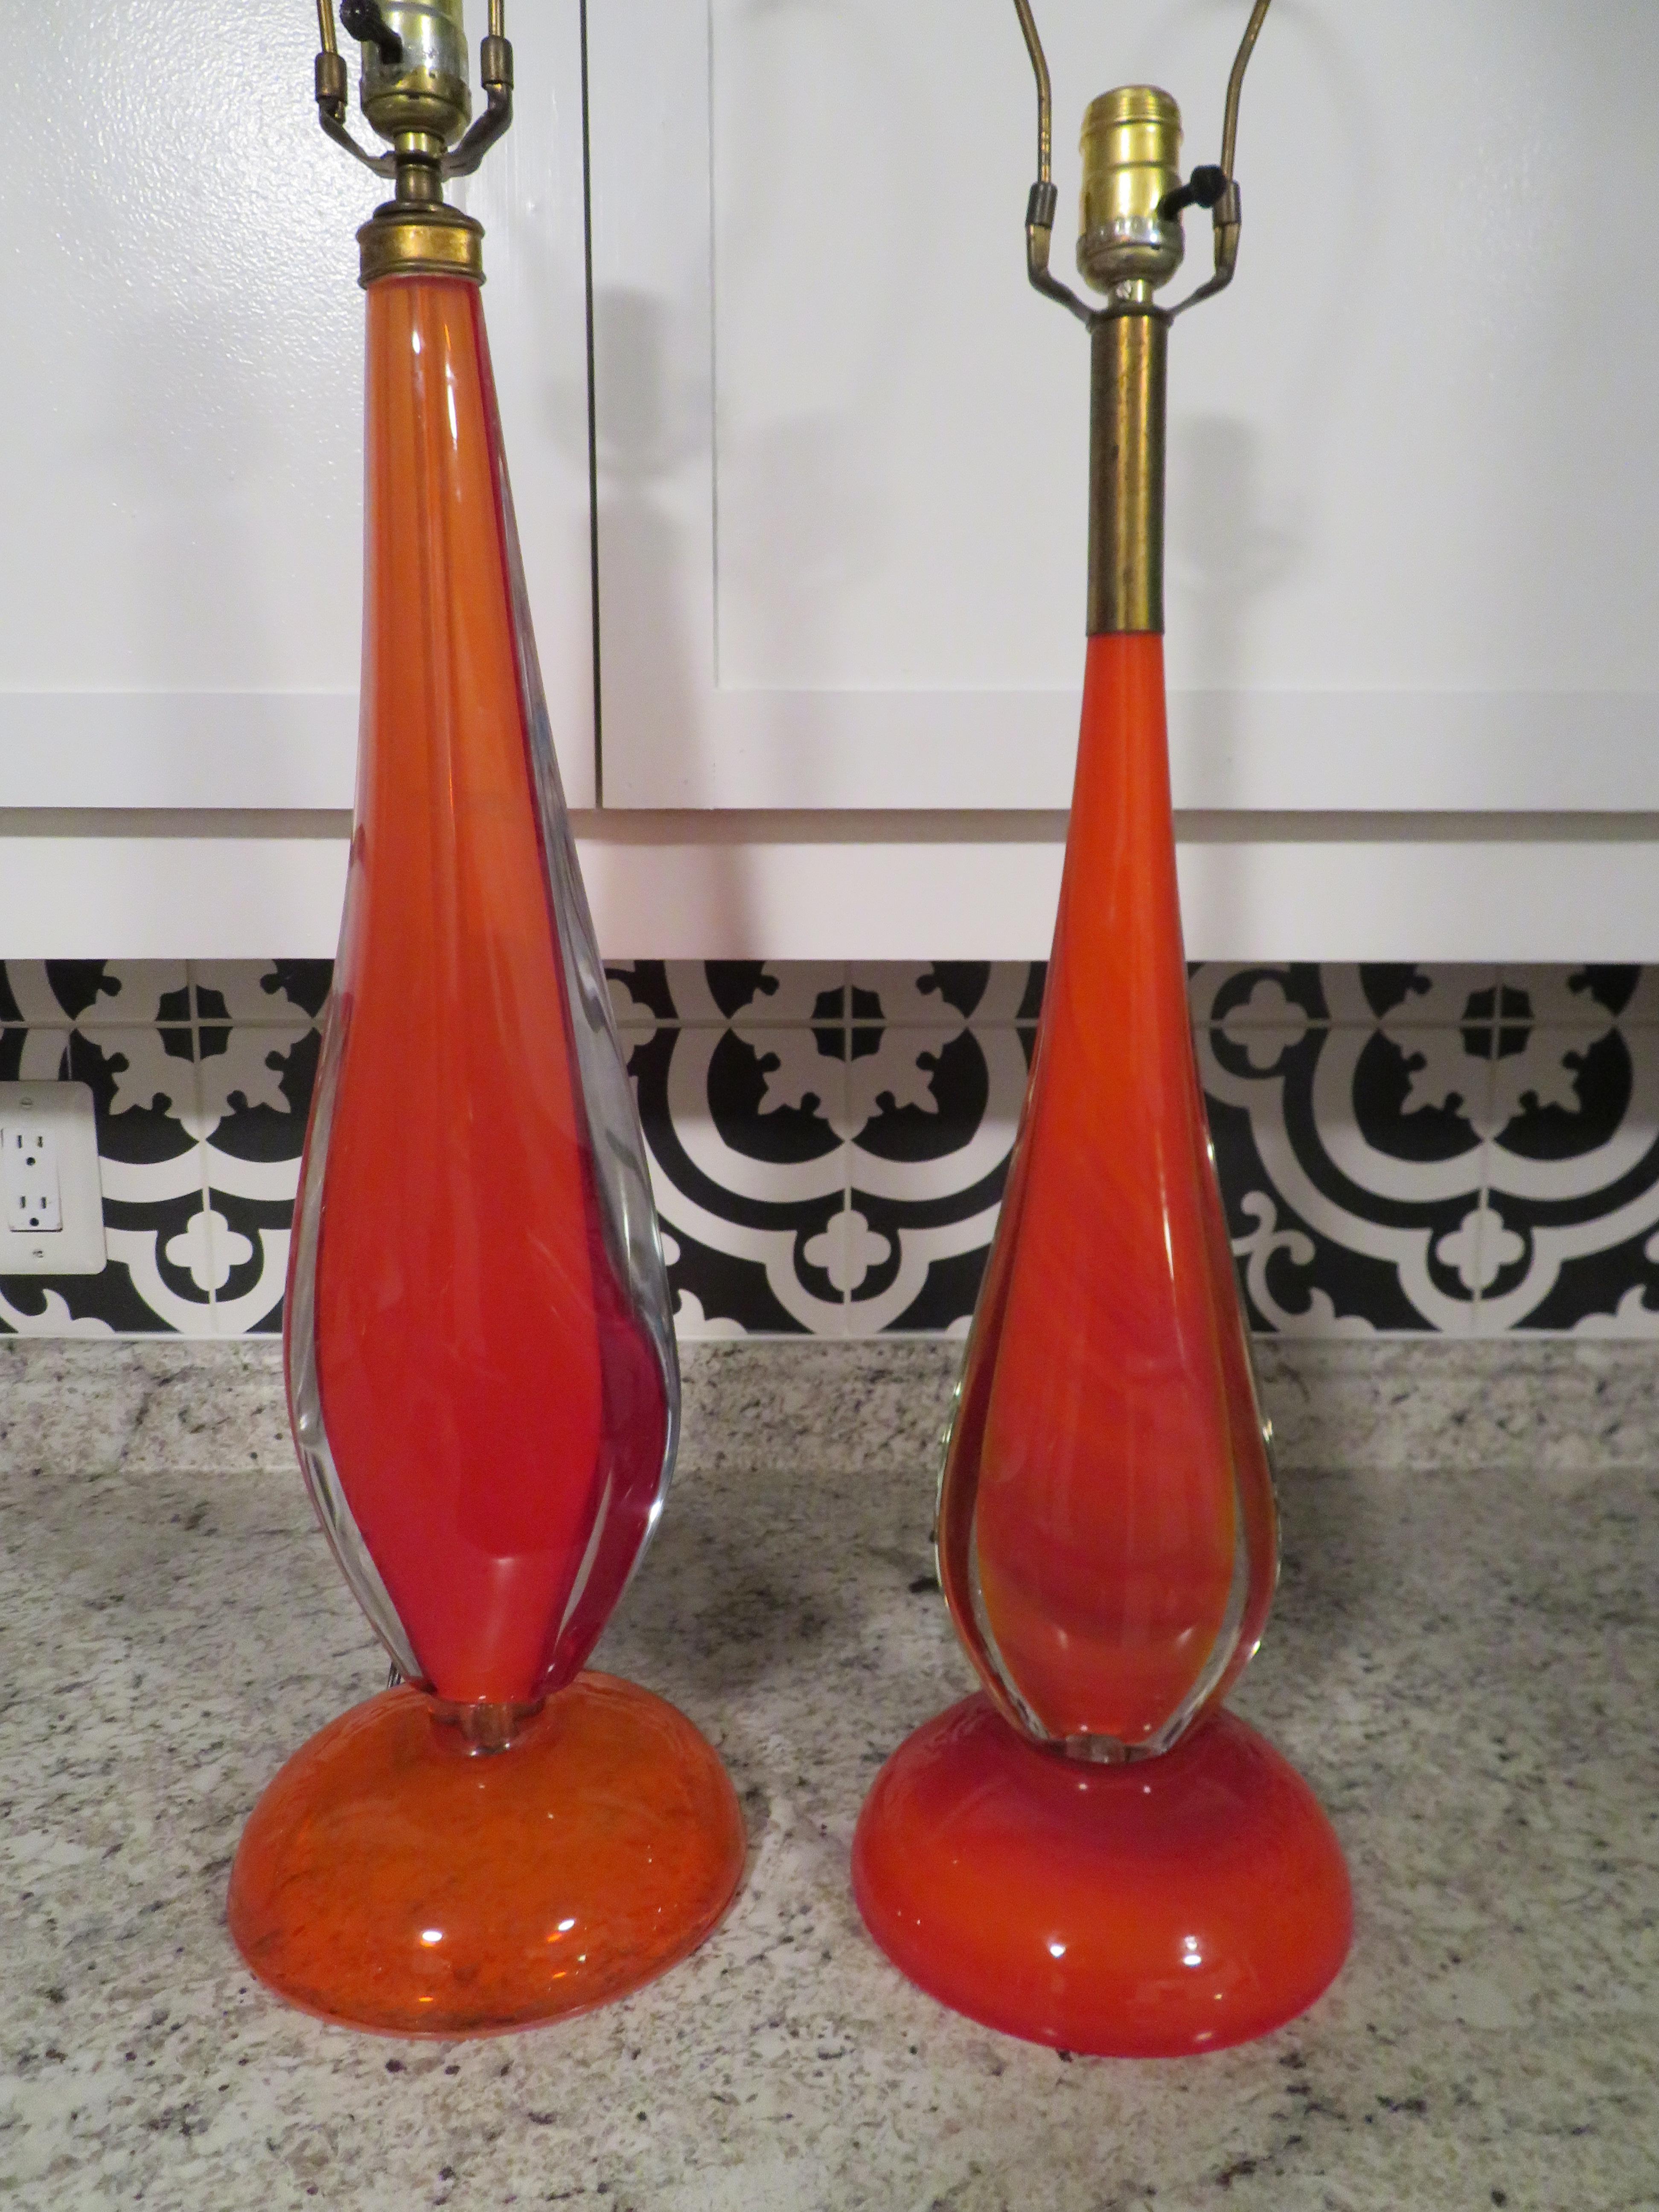 Délicieuse paire de lampes Murano orange de Flavio Poli. Les lampes sont de deux tailles différentes, mais c'est ce que j'adore : elles peuvent être utilisées dans la même pièce, mais sur des tables de hauteurs différentes. Cette couleur orange